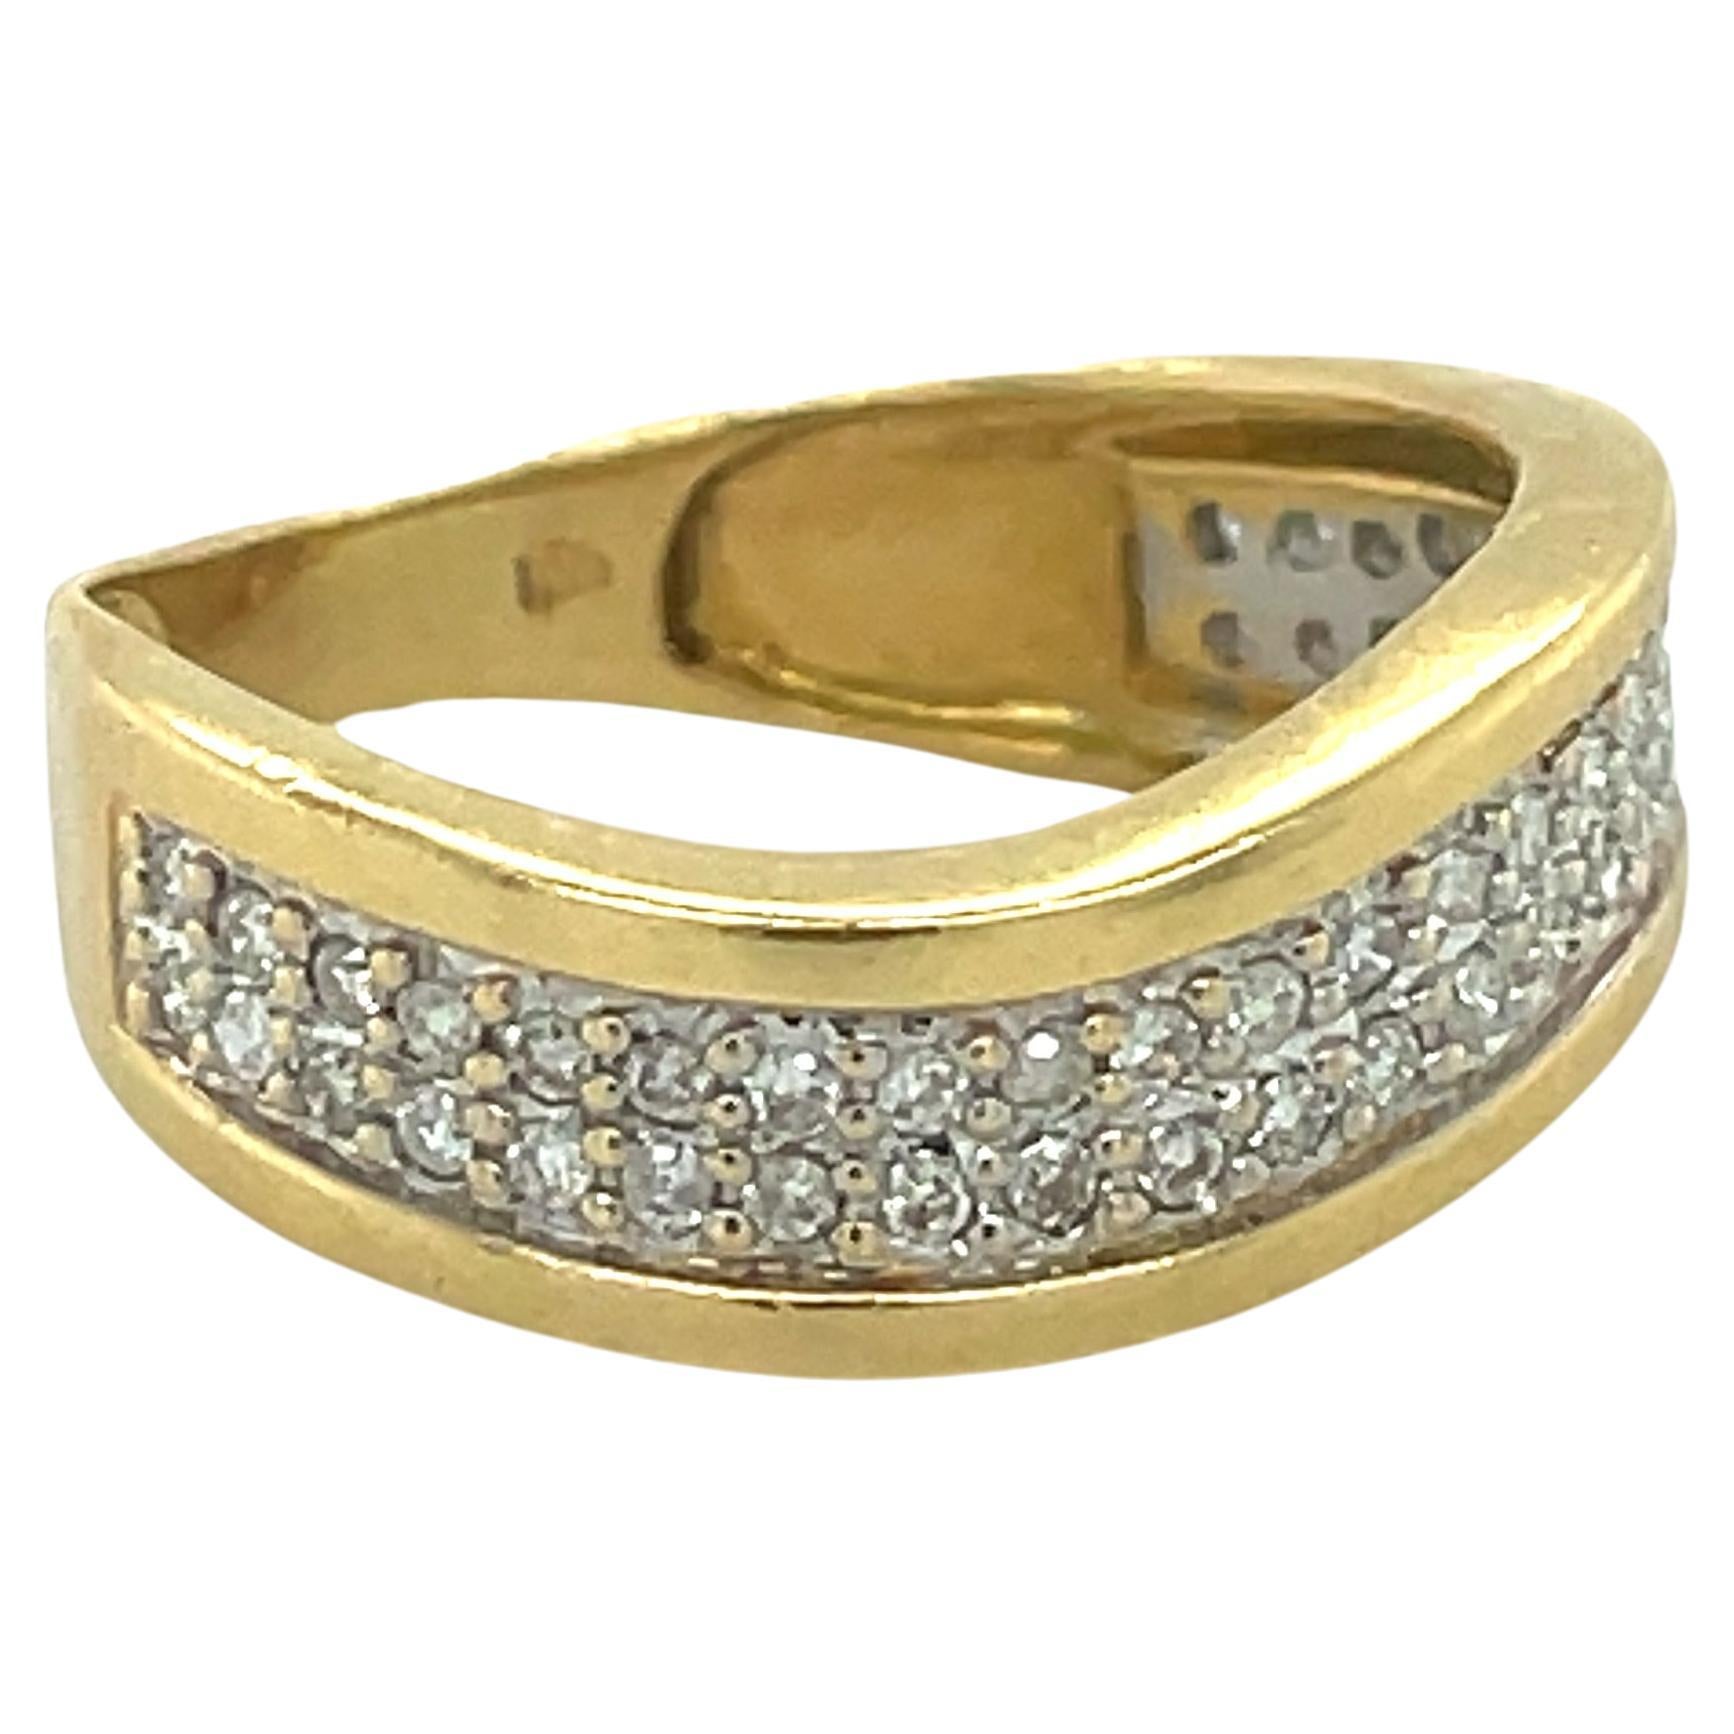 Schmuck MATERIAL: Gelbgold 18k (das Gold wurde von einem Fachmann getestet)
Karat-Gesamtgewicht: 0,25ct (ca.)
Gesamtgewicht Metall: 3.02 g
Größe: 5.5 US \ EU 50 \ Durchmesser 15.90mm (Innendurchmesser)

Benotungsergebnisse:
Stein-Typ: Diamant
Die